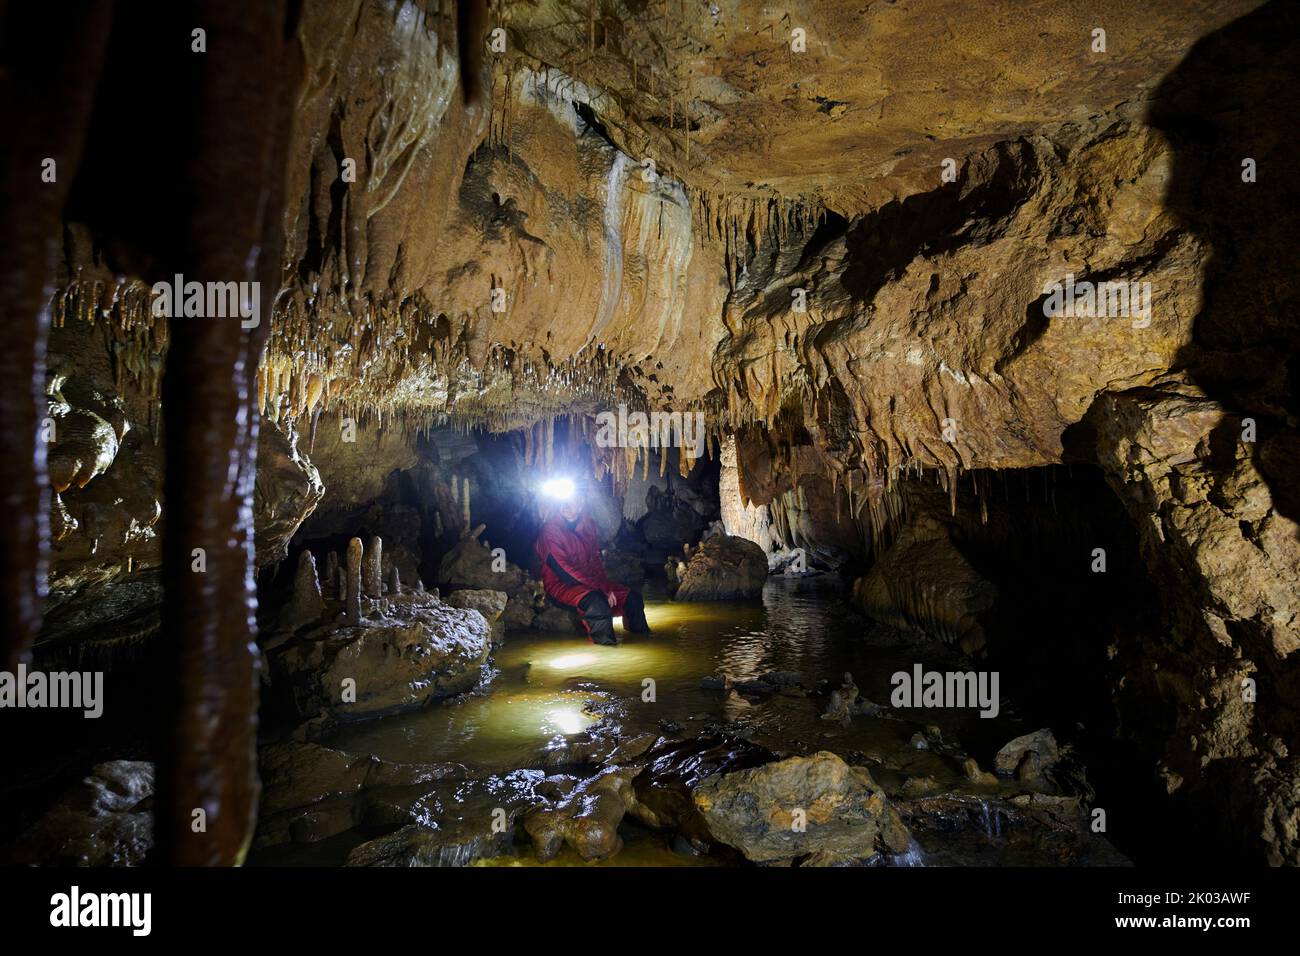 Dripstone cave, Grotte du Château de la Roche Stock Photo